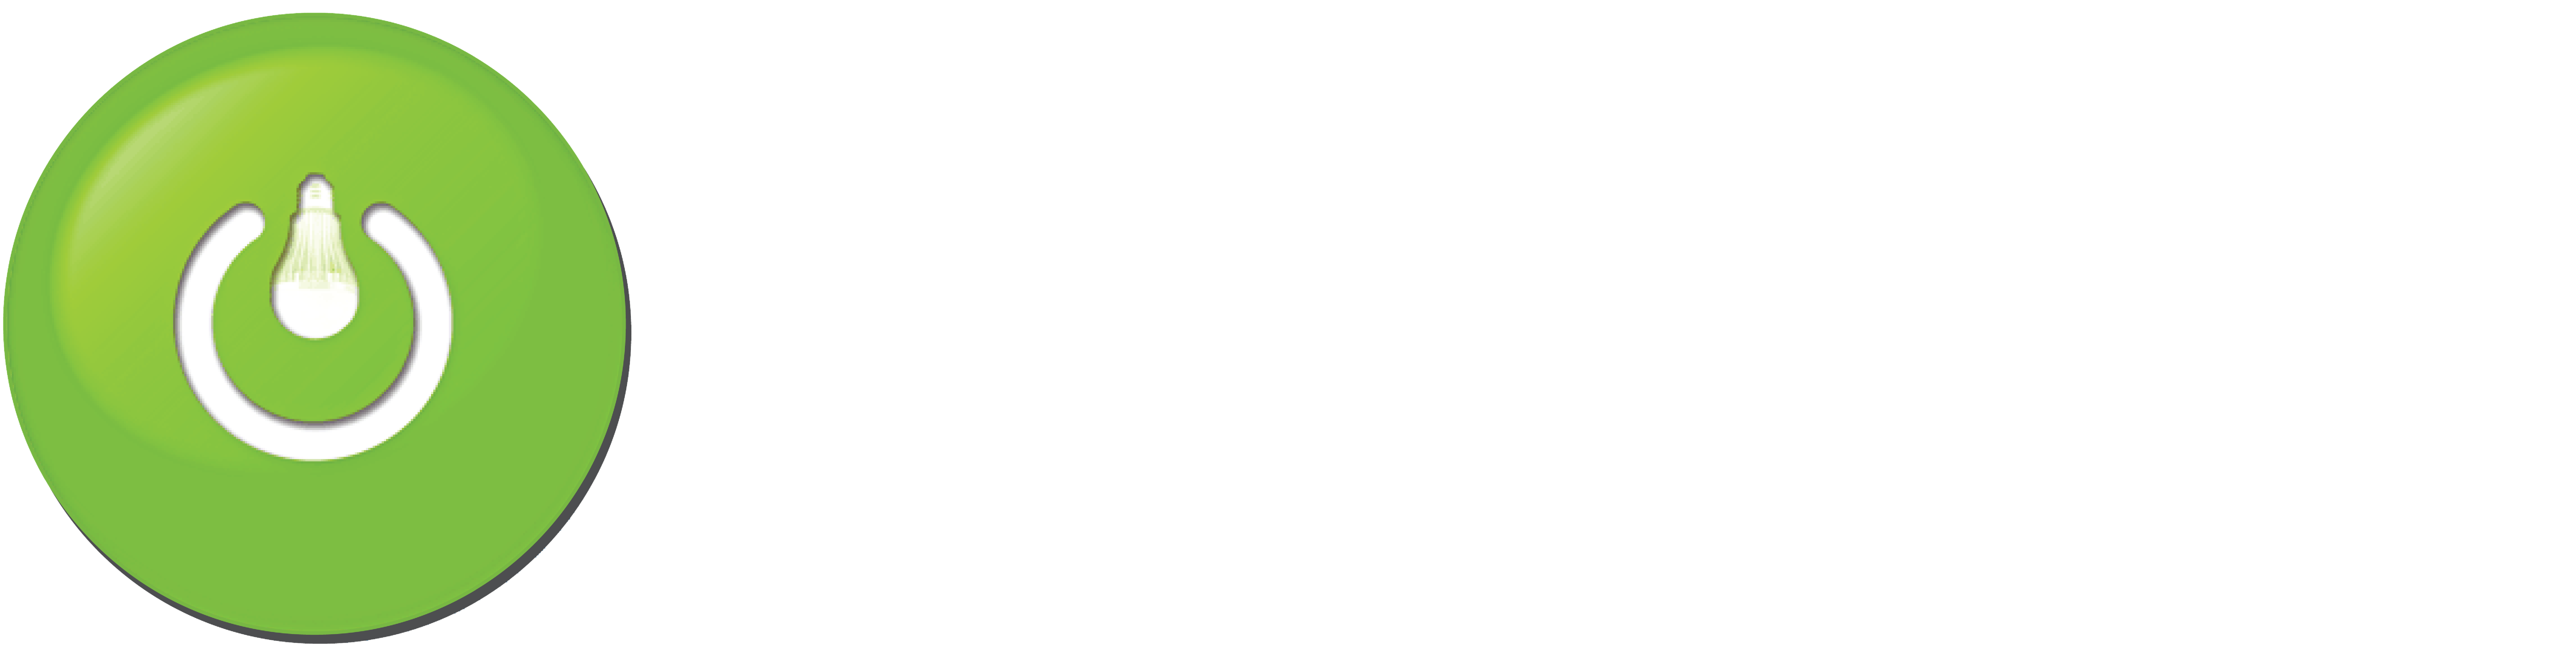 Light Energy Development